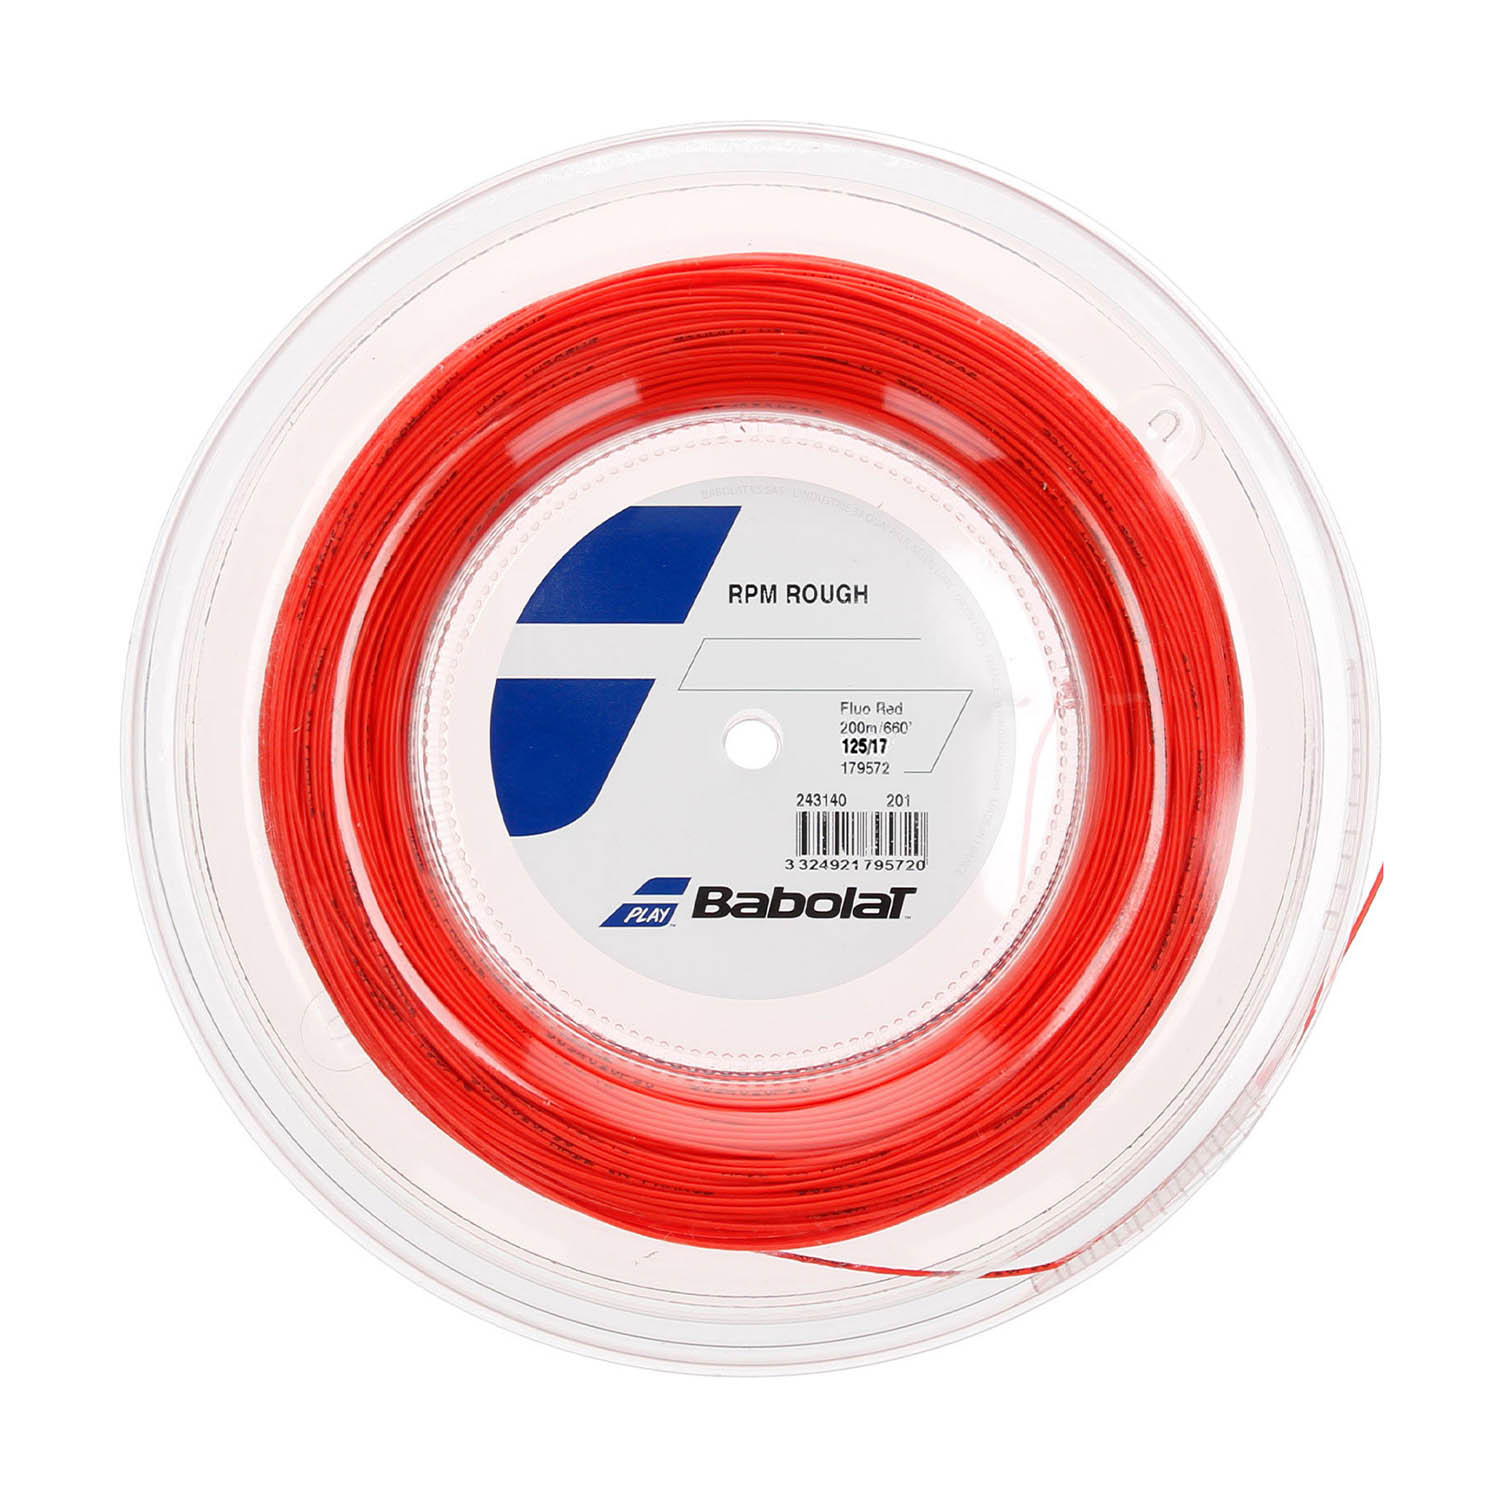 Babolat RPM Rough 1.25 Matassa 200 m - Red Fluo